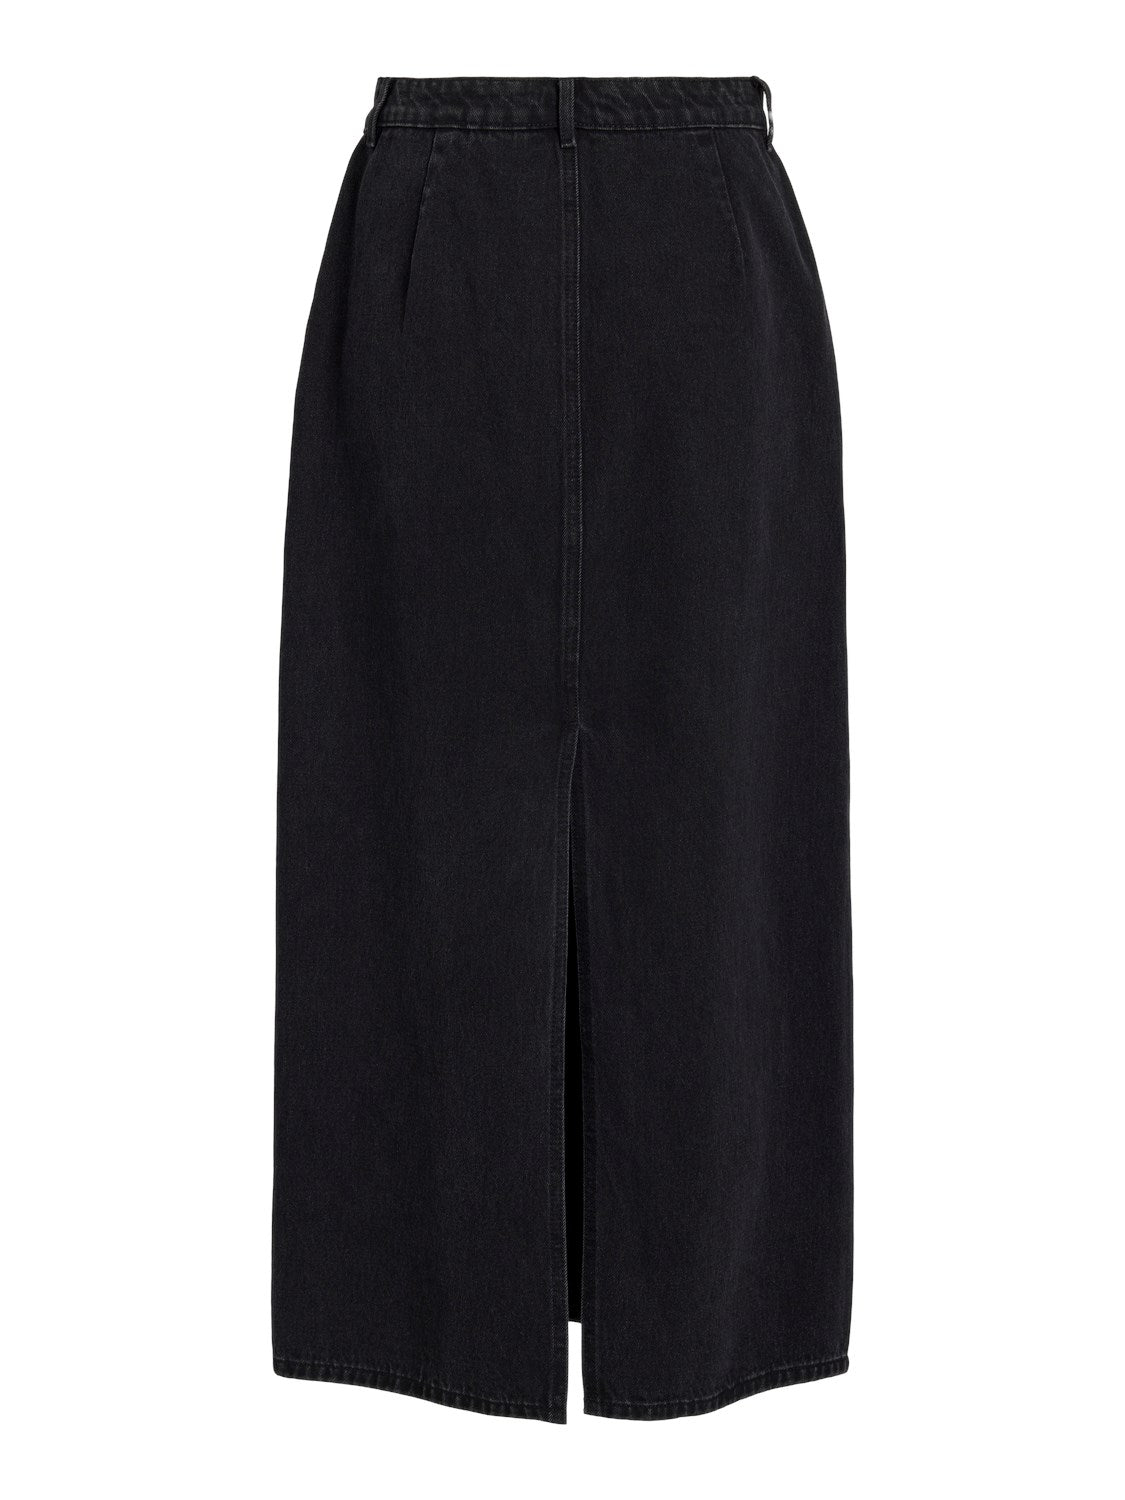 Kira Long Denim Skirt Black